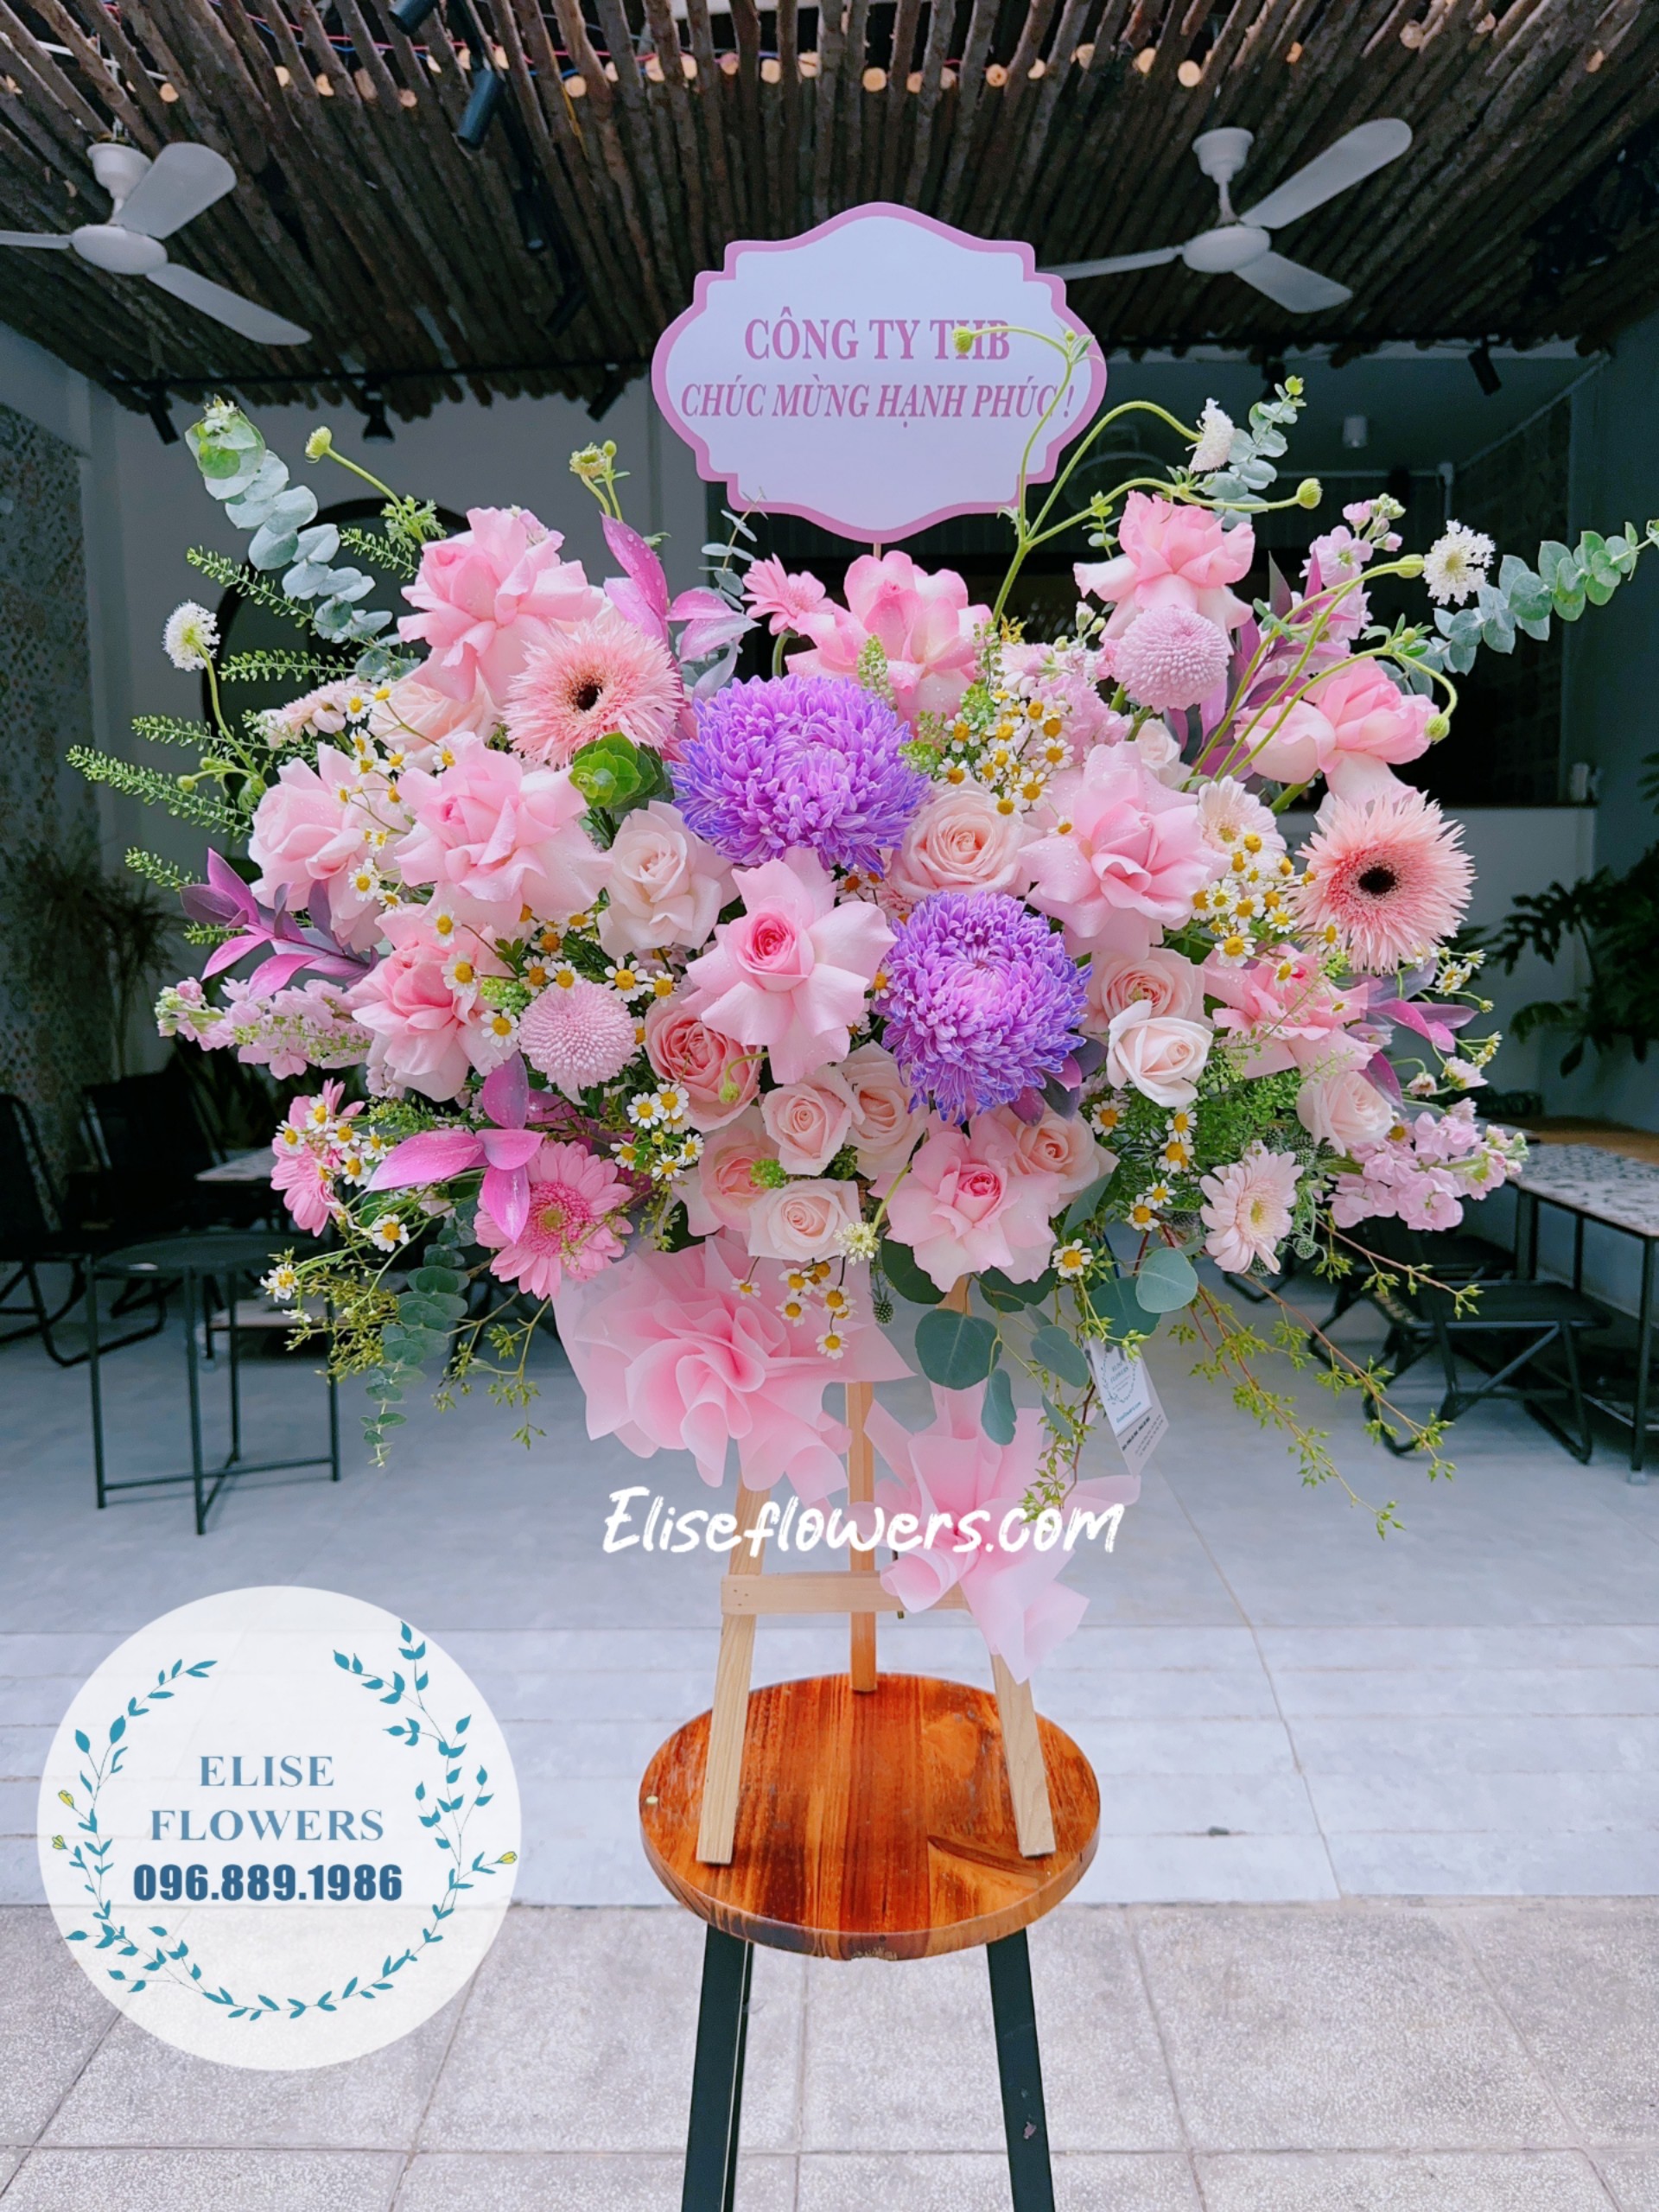 Đặt kệ hoa chúc mừng mini tại tiệm hoa Eliseflowers. Dịch vụ đặt hoa online - Giao hoa tận nơi 